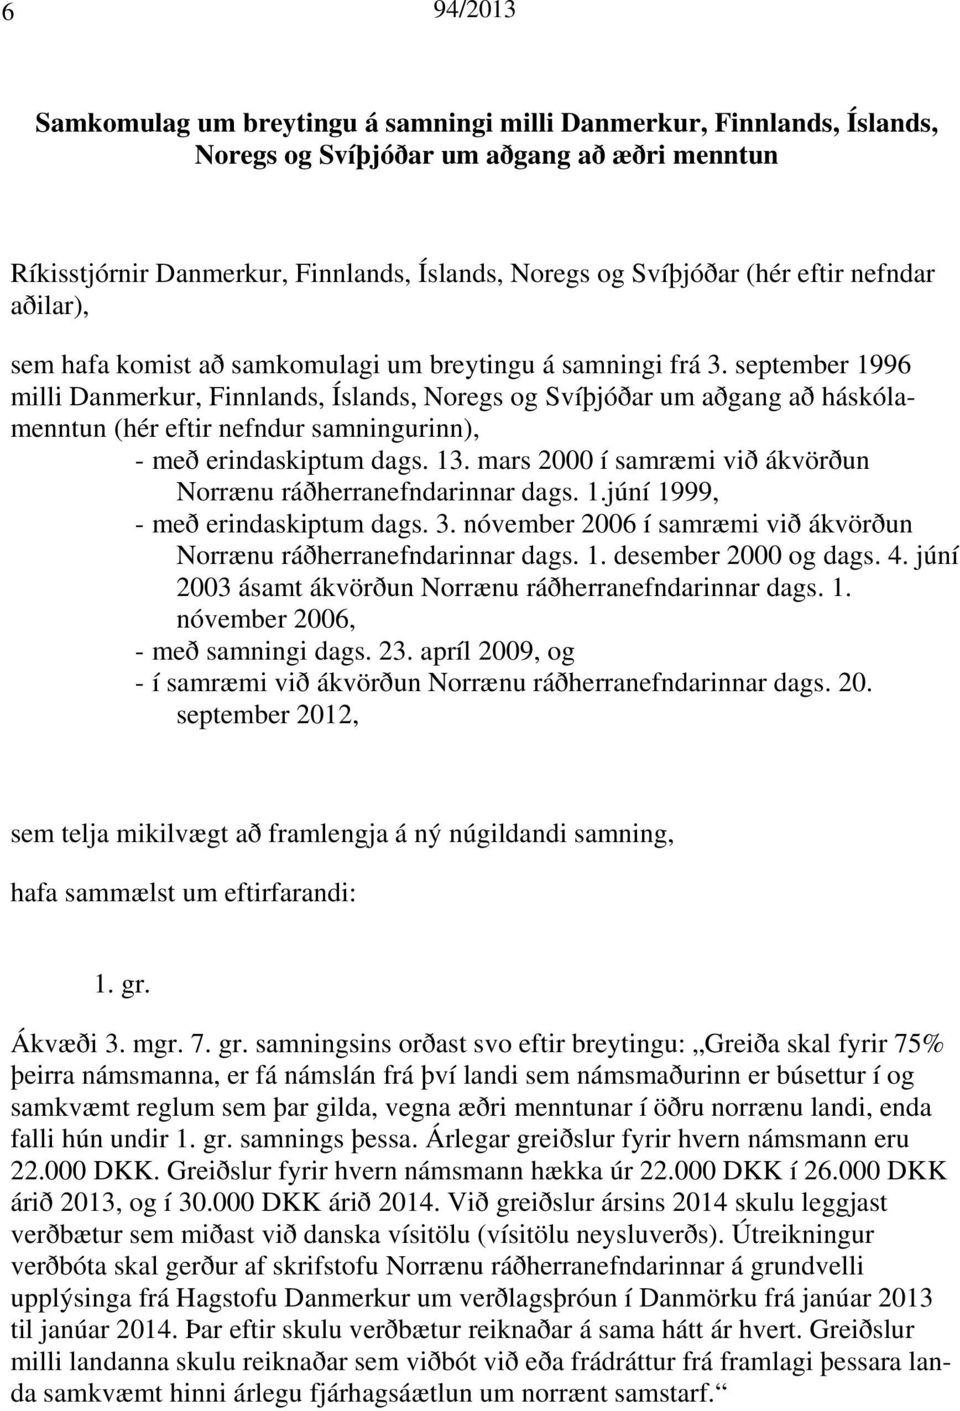 september 1996 milli Danmerkur, Finnlands, Íslands, Noregs og Svíþjóðar um aðgang að háskólamenntun (hér eftir nefndur samningurinn), - með erindaskiptum dags. 13.